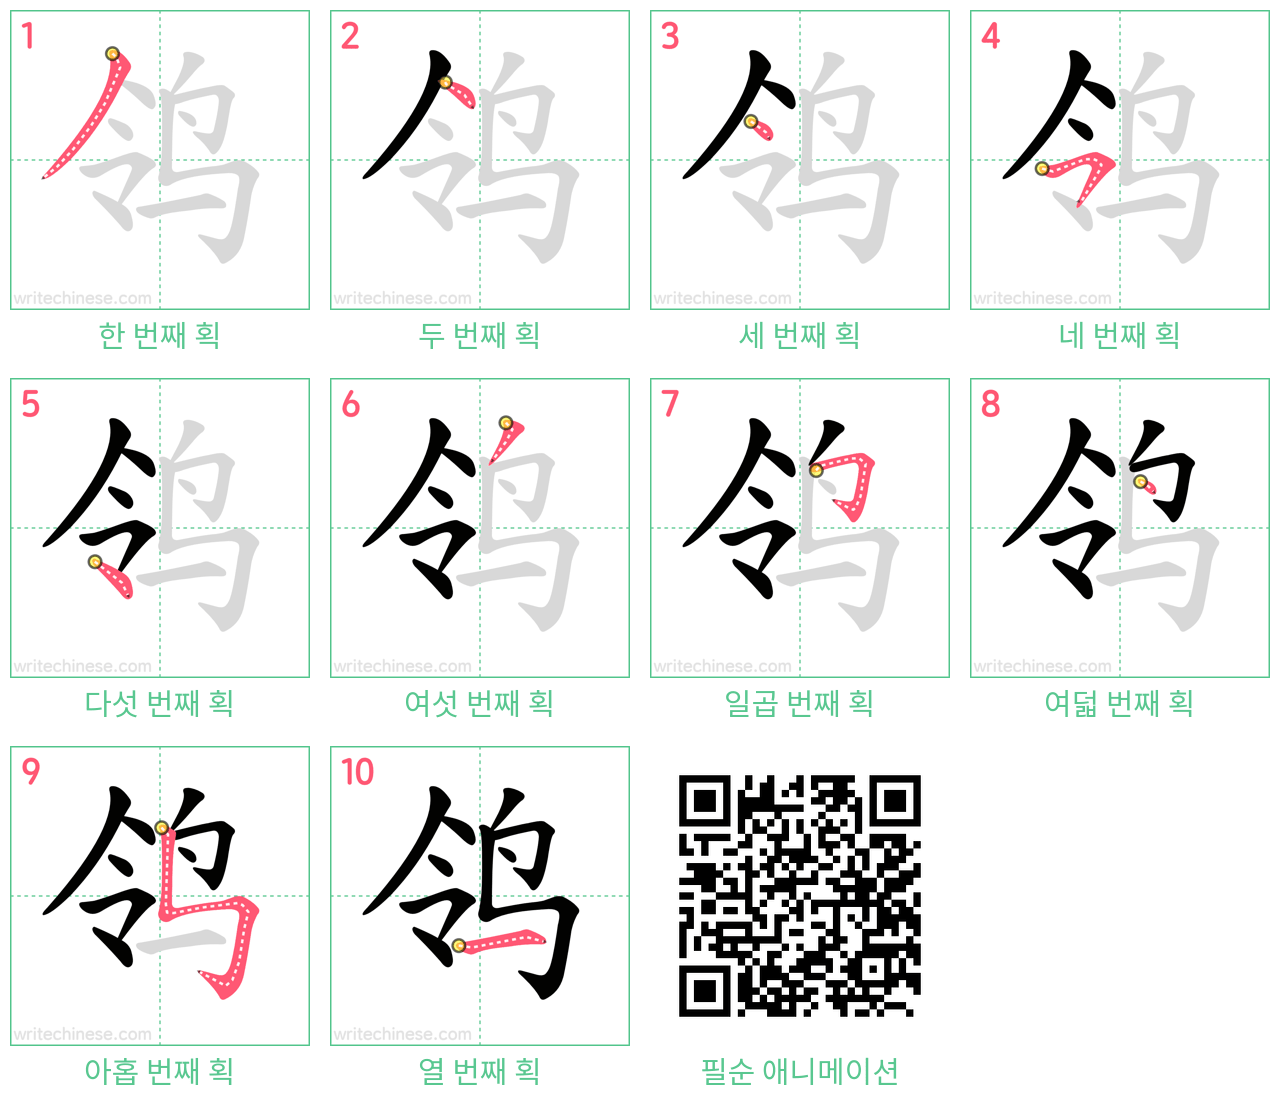 鸰 step-by-step stroke order diagrams